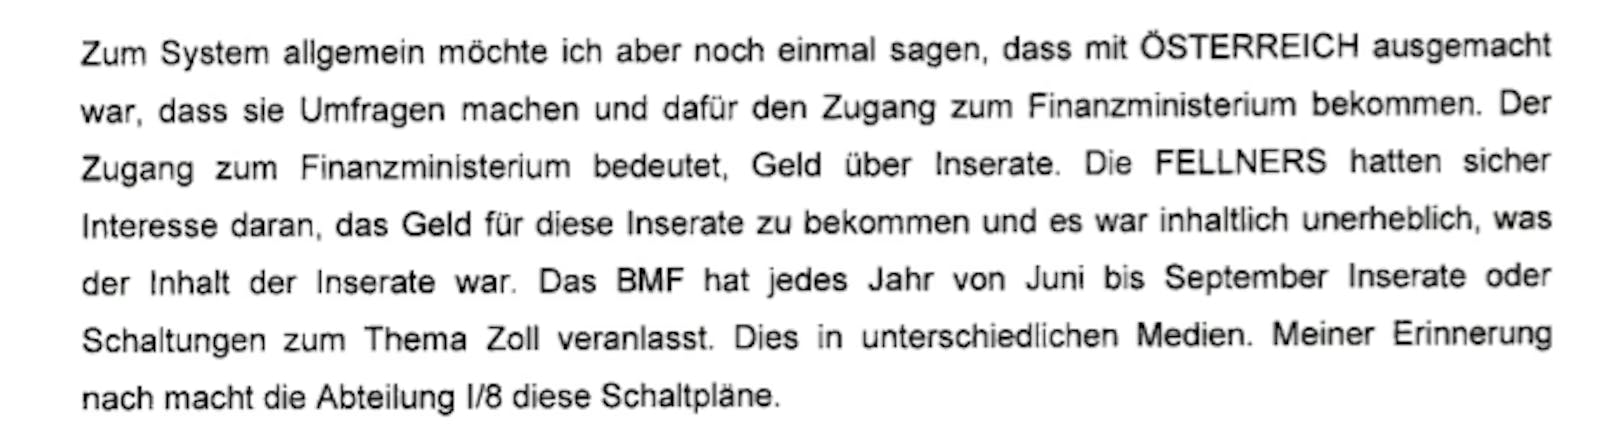 Thomas Schmid belastet Sebastian Kurz in 15 Einvernahmen massiv.